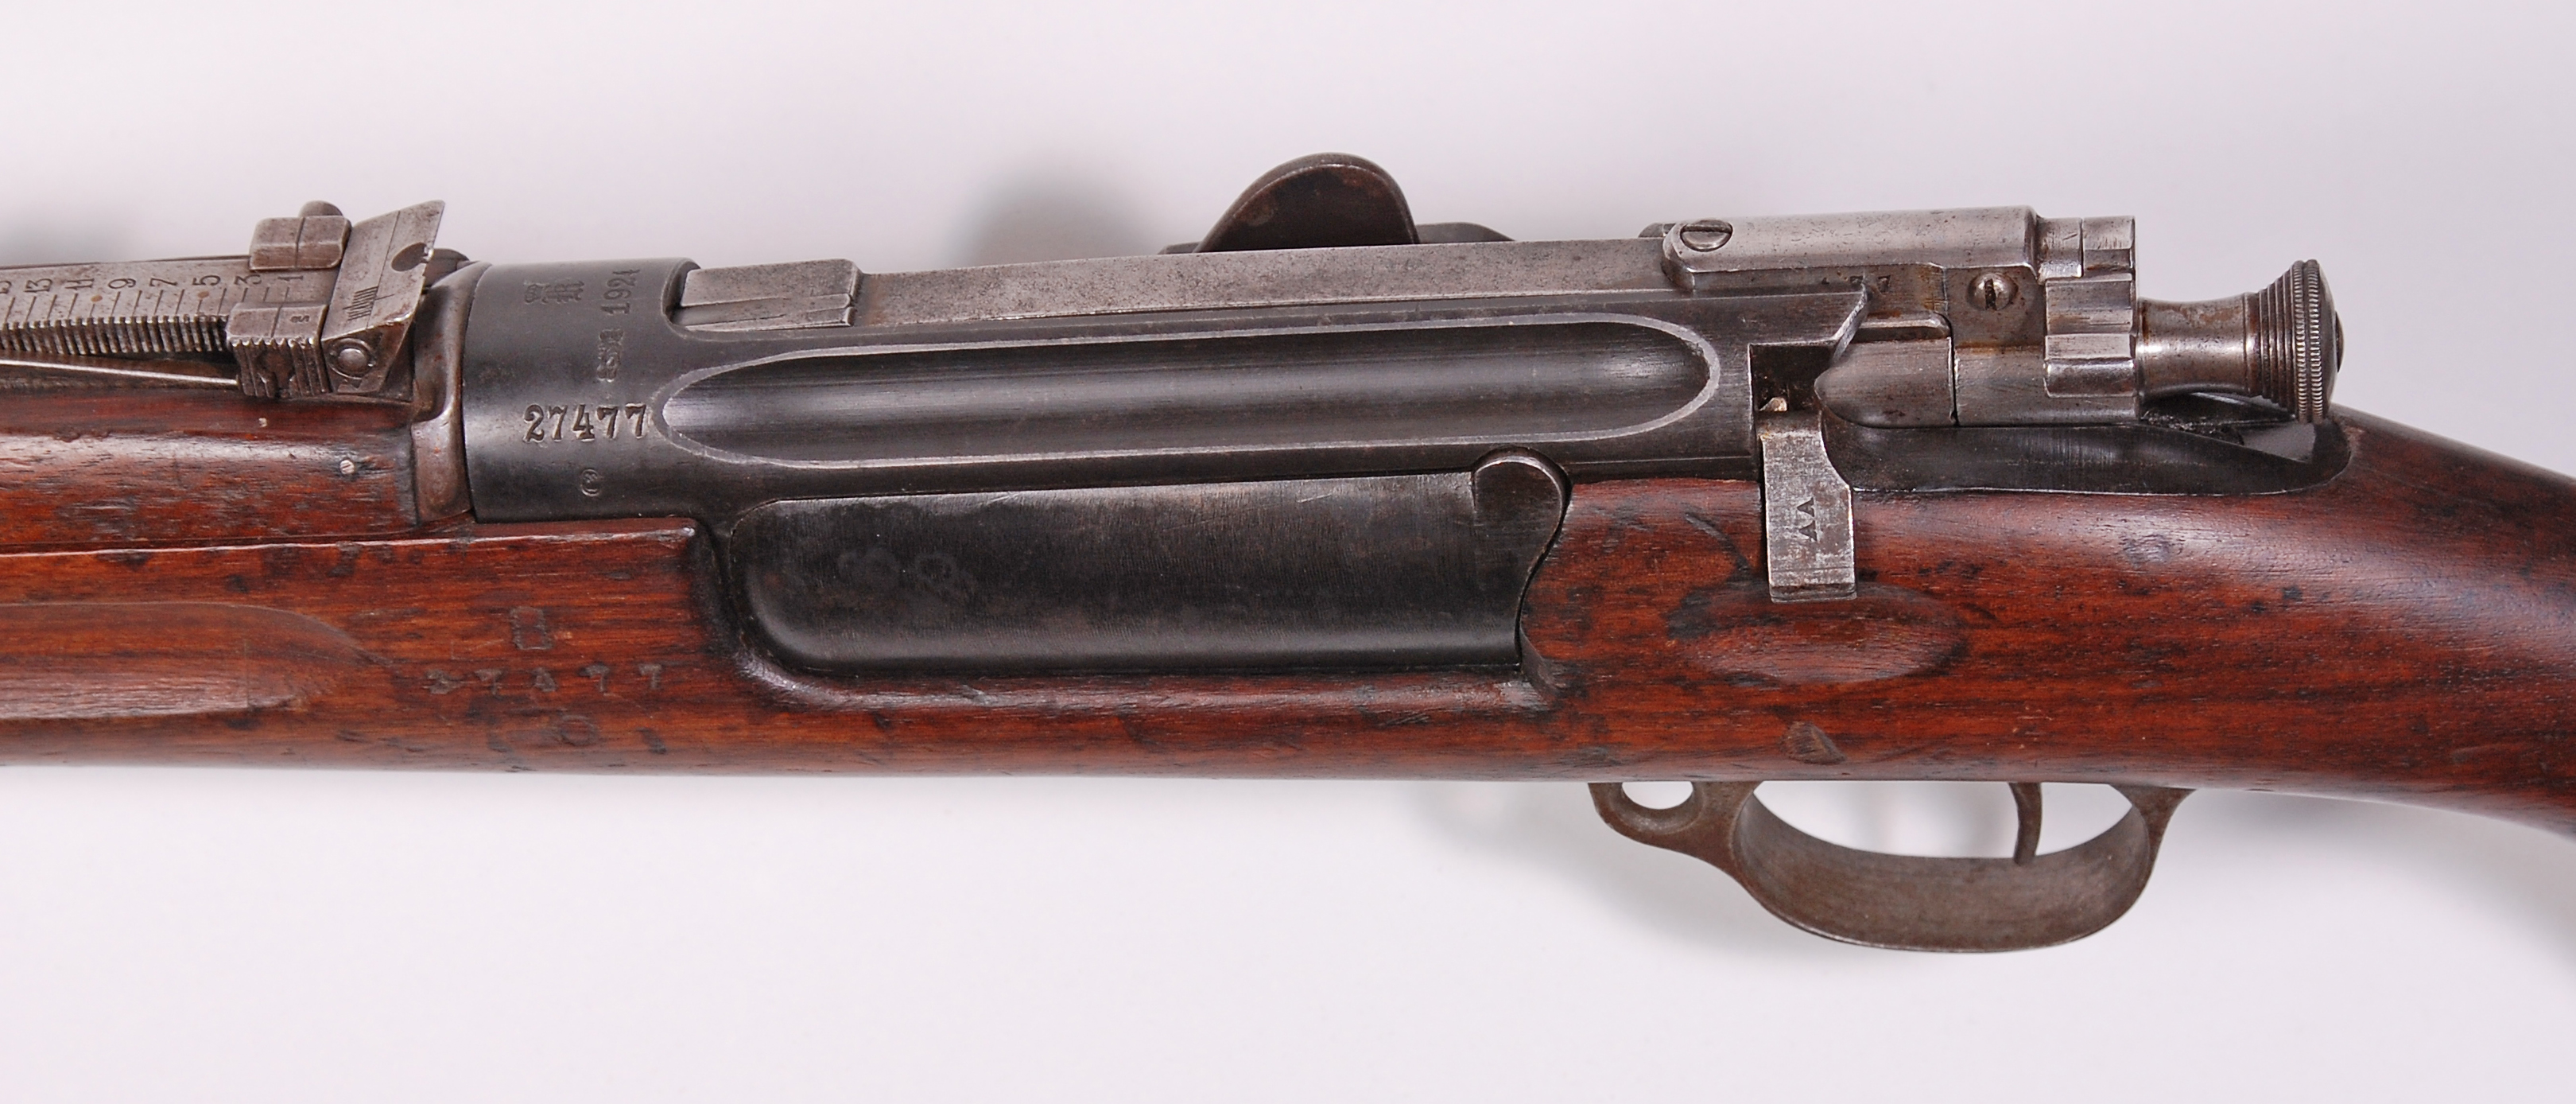 ./guns/rifle/bilder/Rifle-Kongsberg-Krag-M1912-22-27477-3.jpg